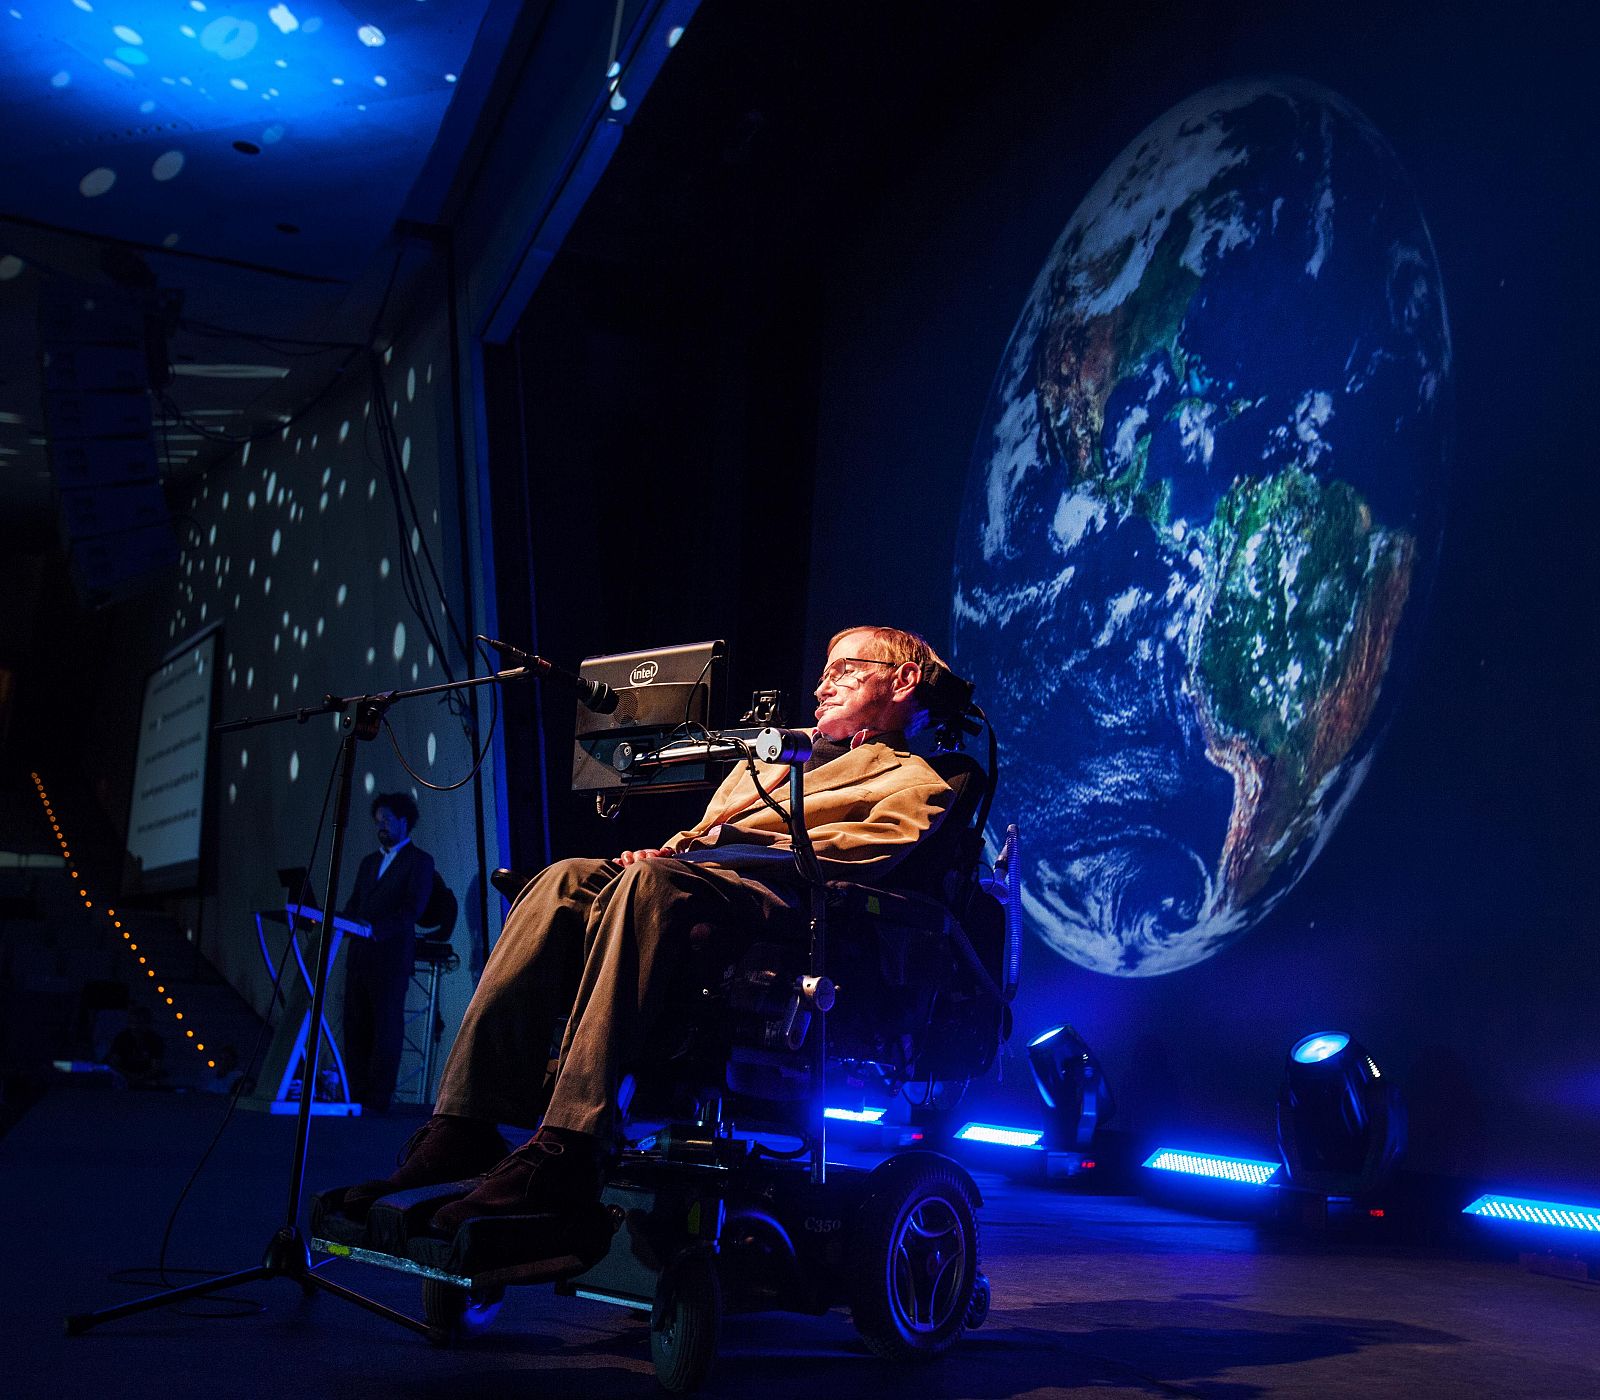 El físico británico y profesor Stephen Hawking, durante su conferencia en el Festival Starmus en Tenerife.